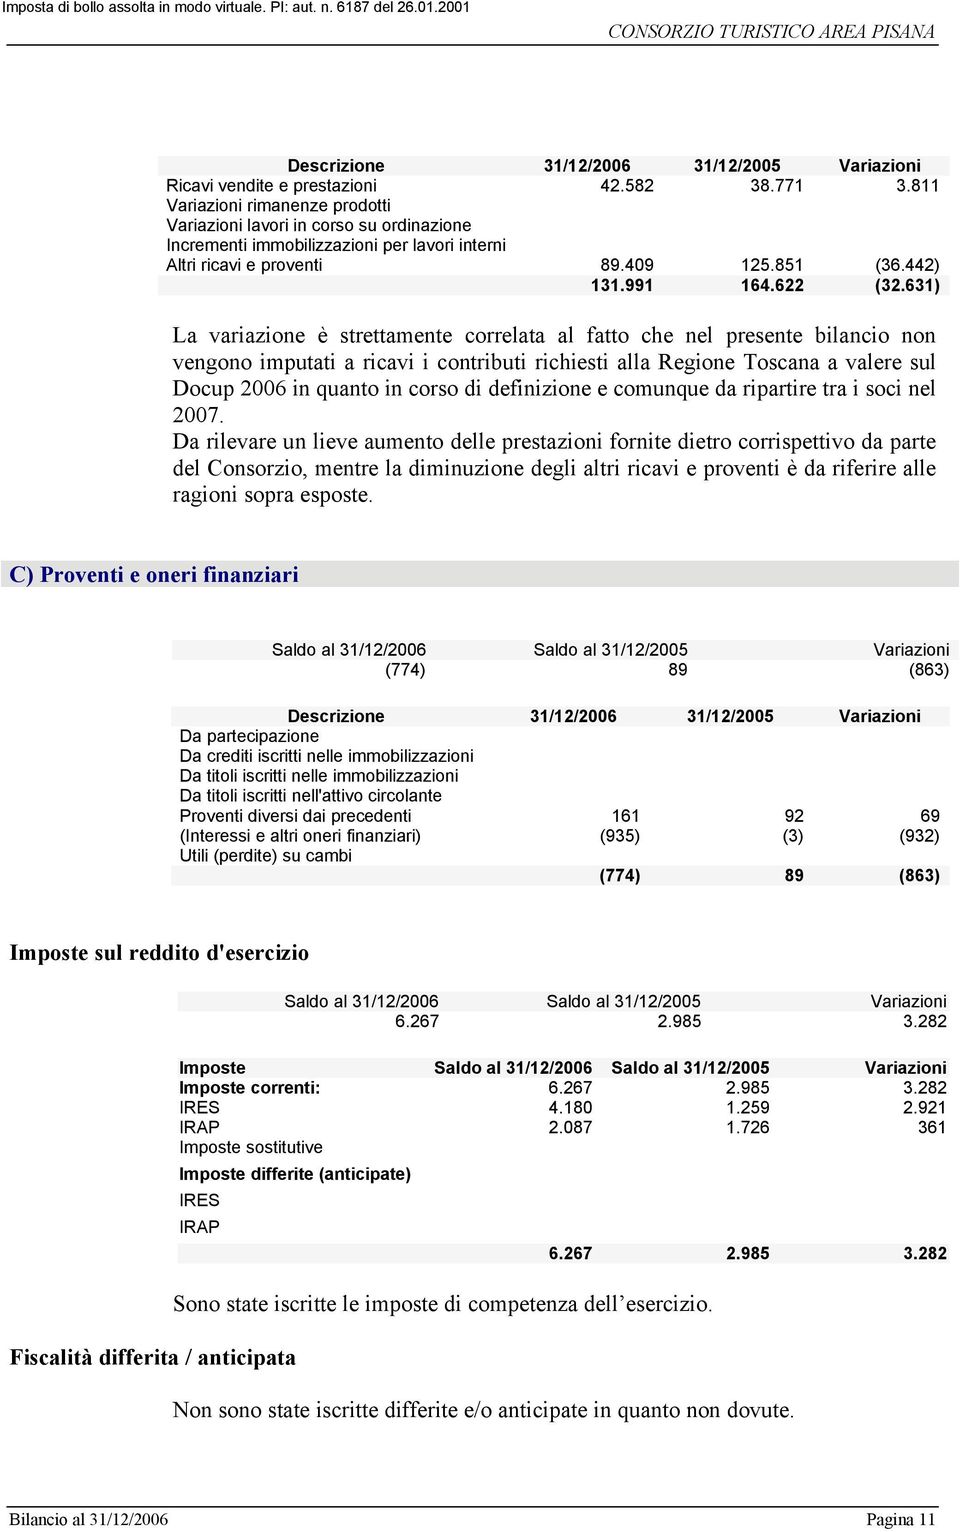 631) La variazione è strettamente correlata al fatto che nel presente bilancio non vengono imputati a ricavi i contributi richiesti alla Regione Toscana a valere sul Docup 2006 in quanto in corso di